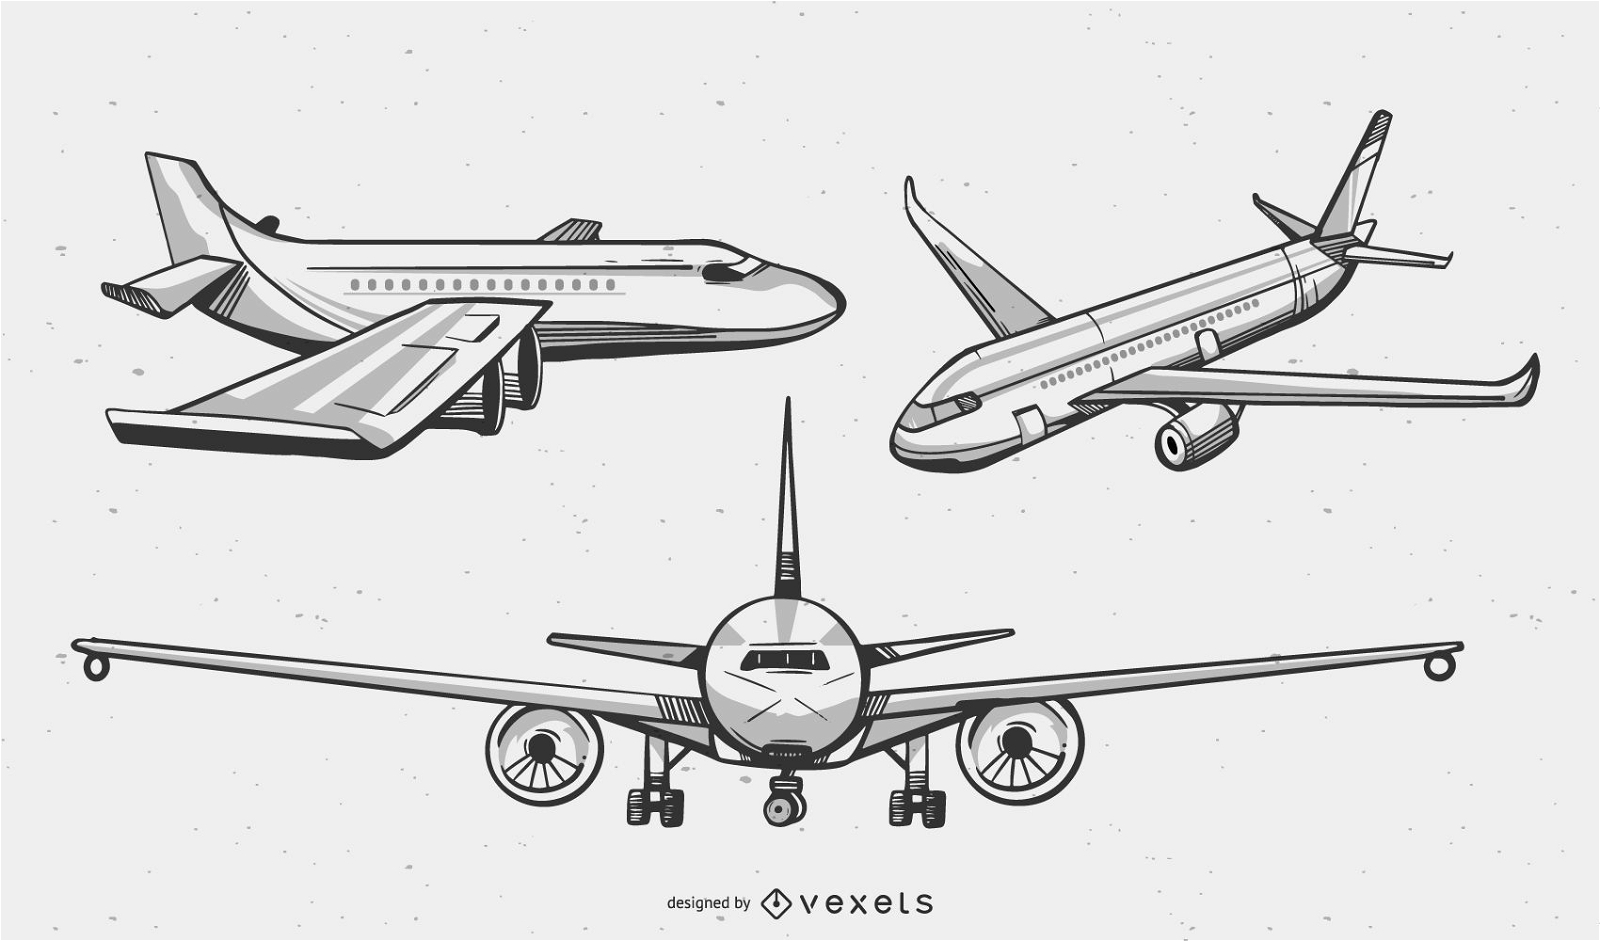 Vectores & Gráficos de aviones para descargar